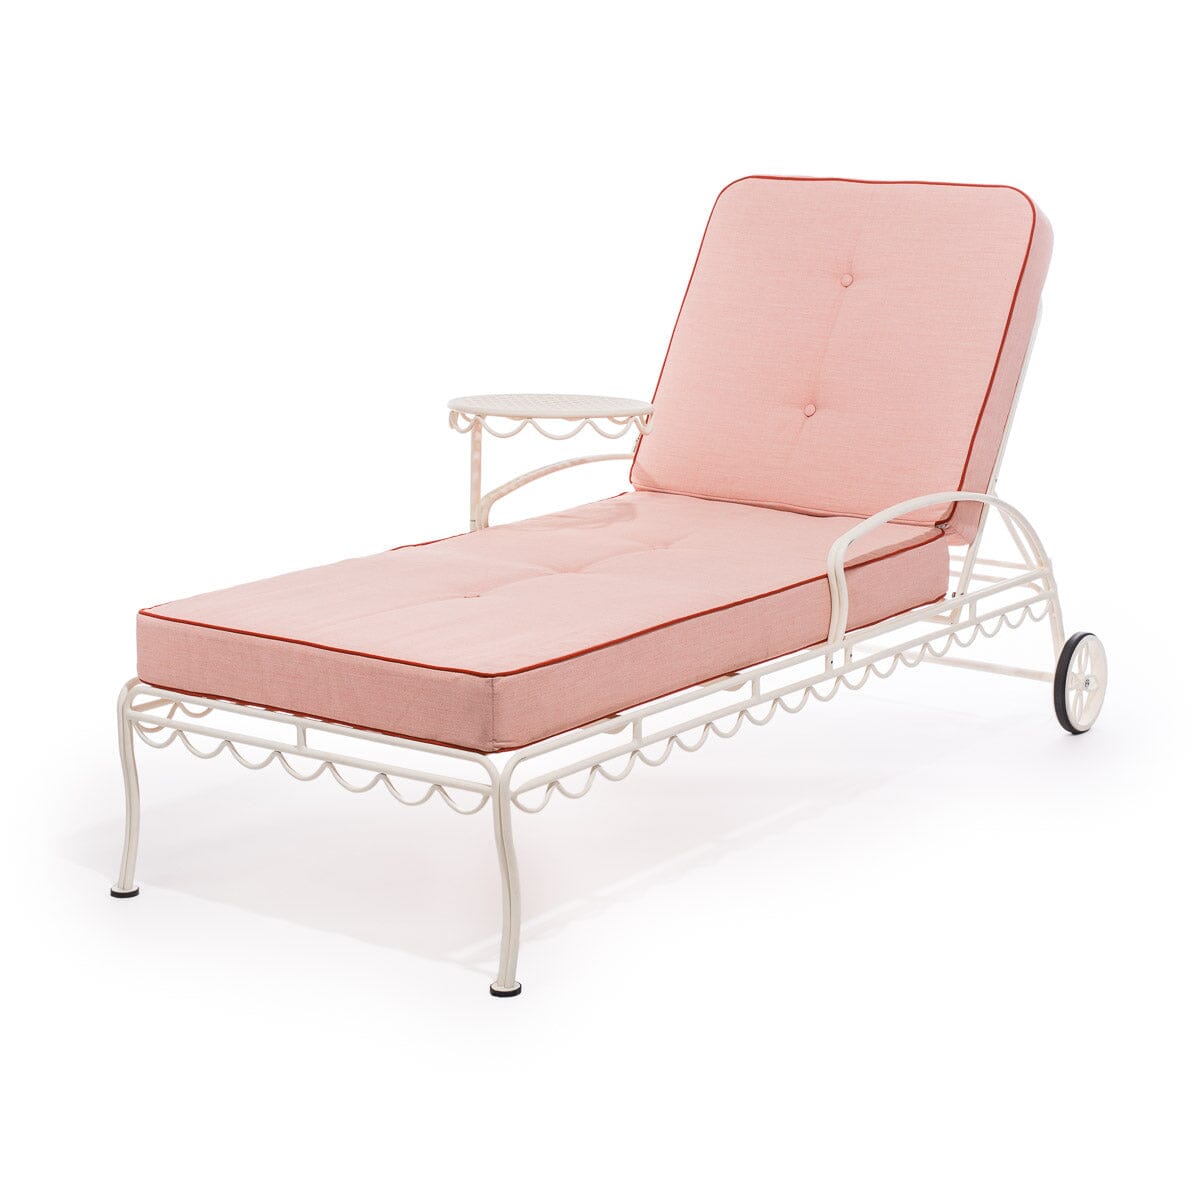 The Al Fresco Sun Lounger Cushion - Rivie Pink Al Fresco Sun Lounger Cushions Business & Pleasure Co 